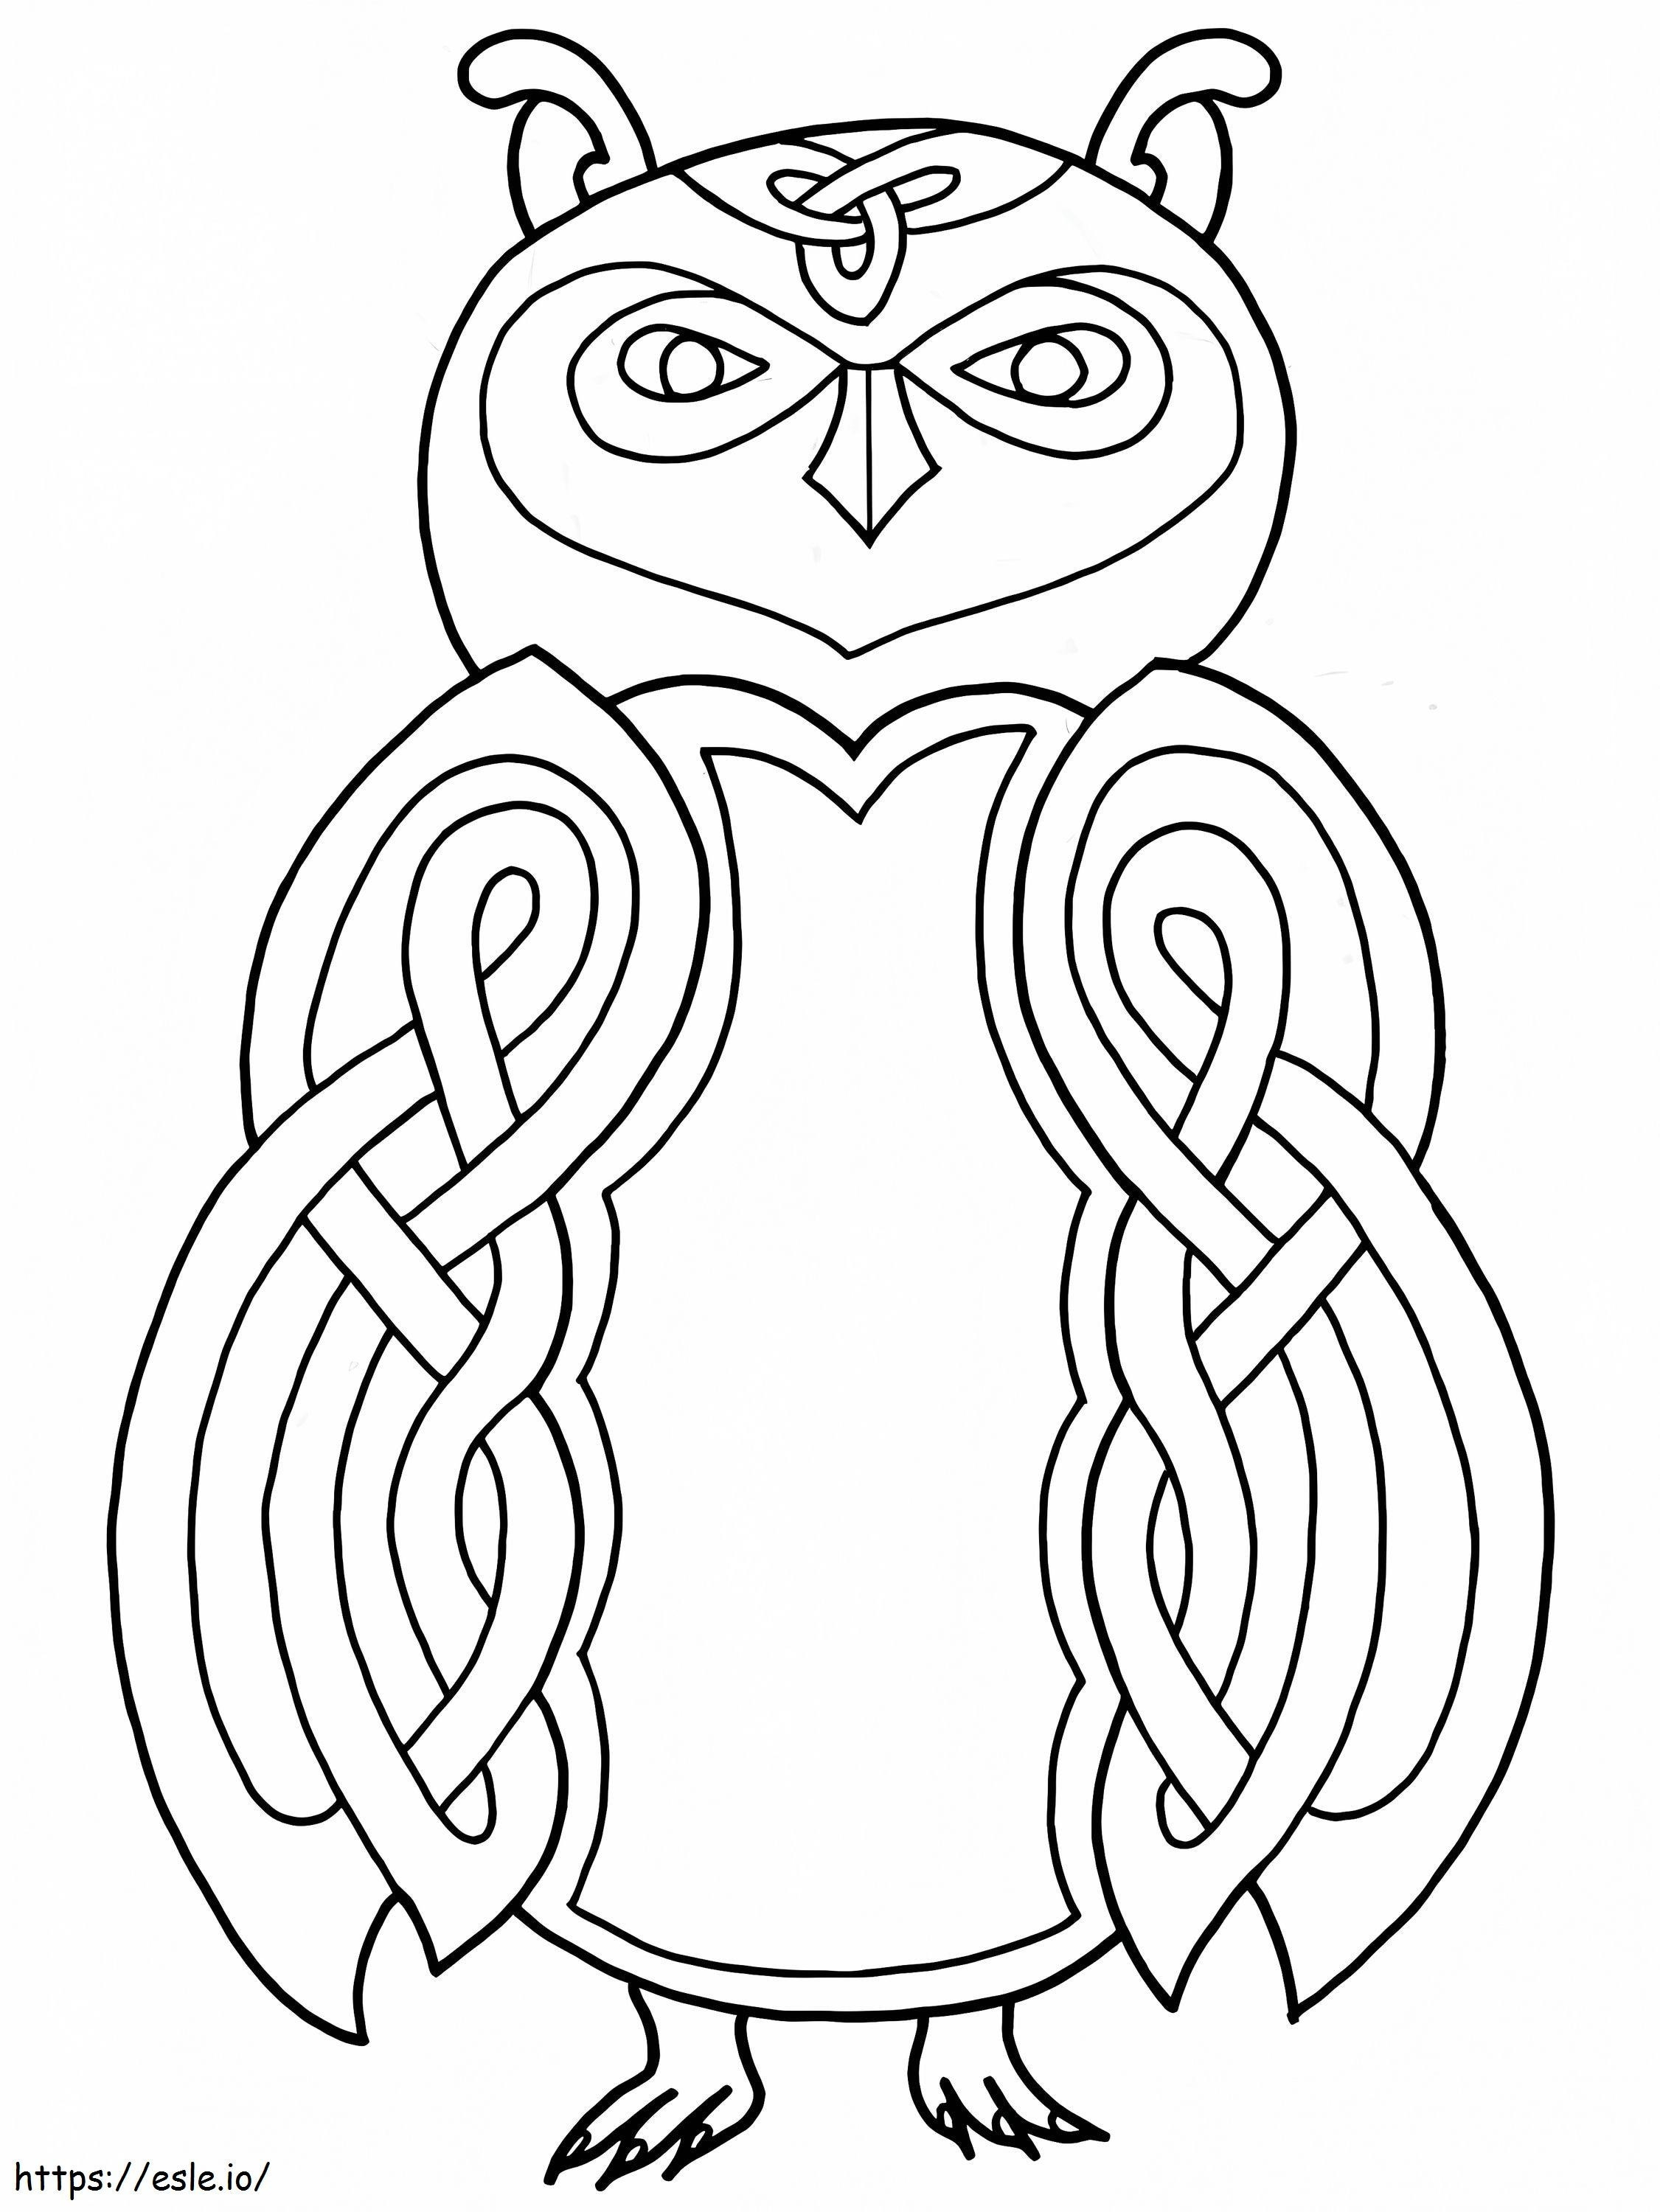 Disegno gufo celtico da colorare